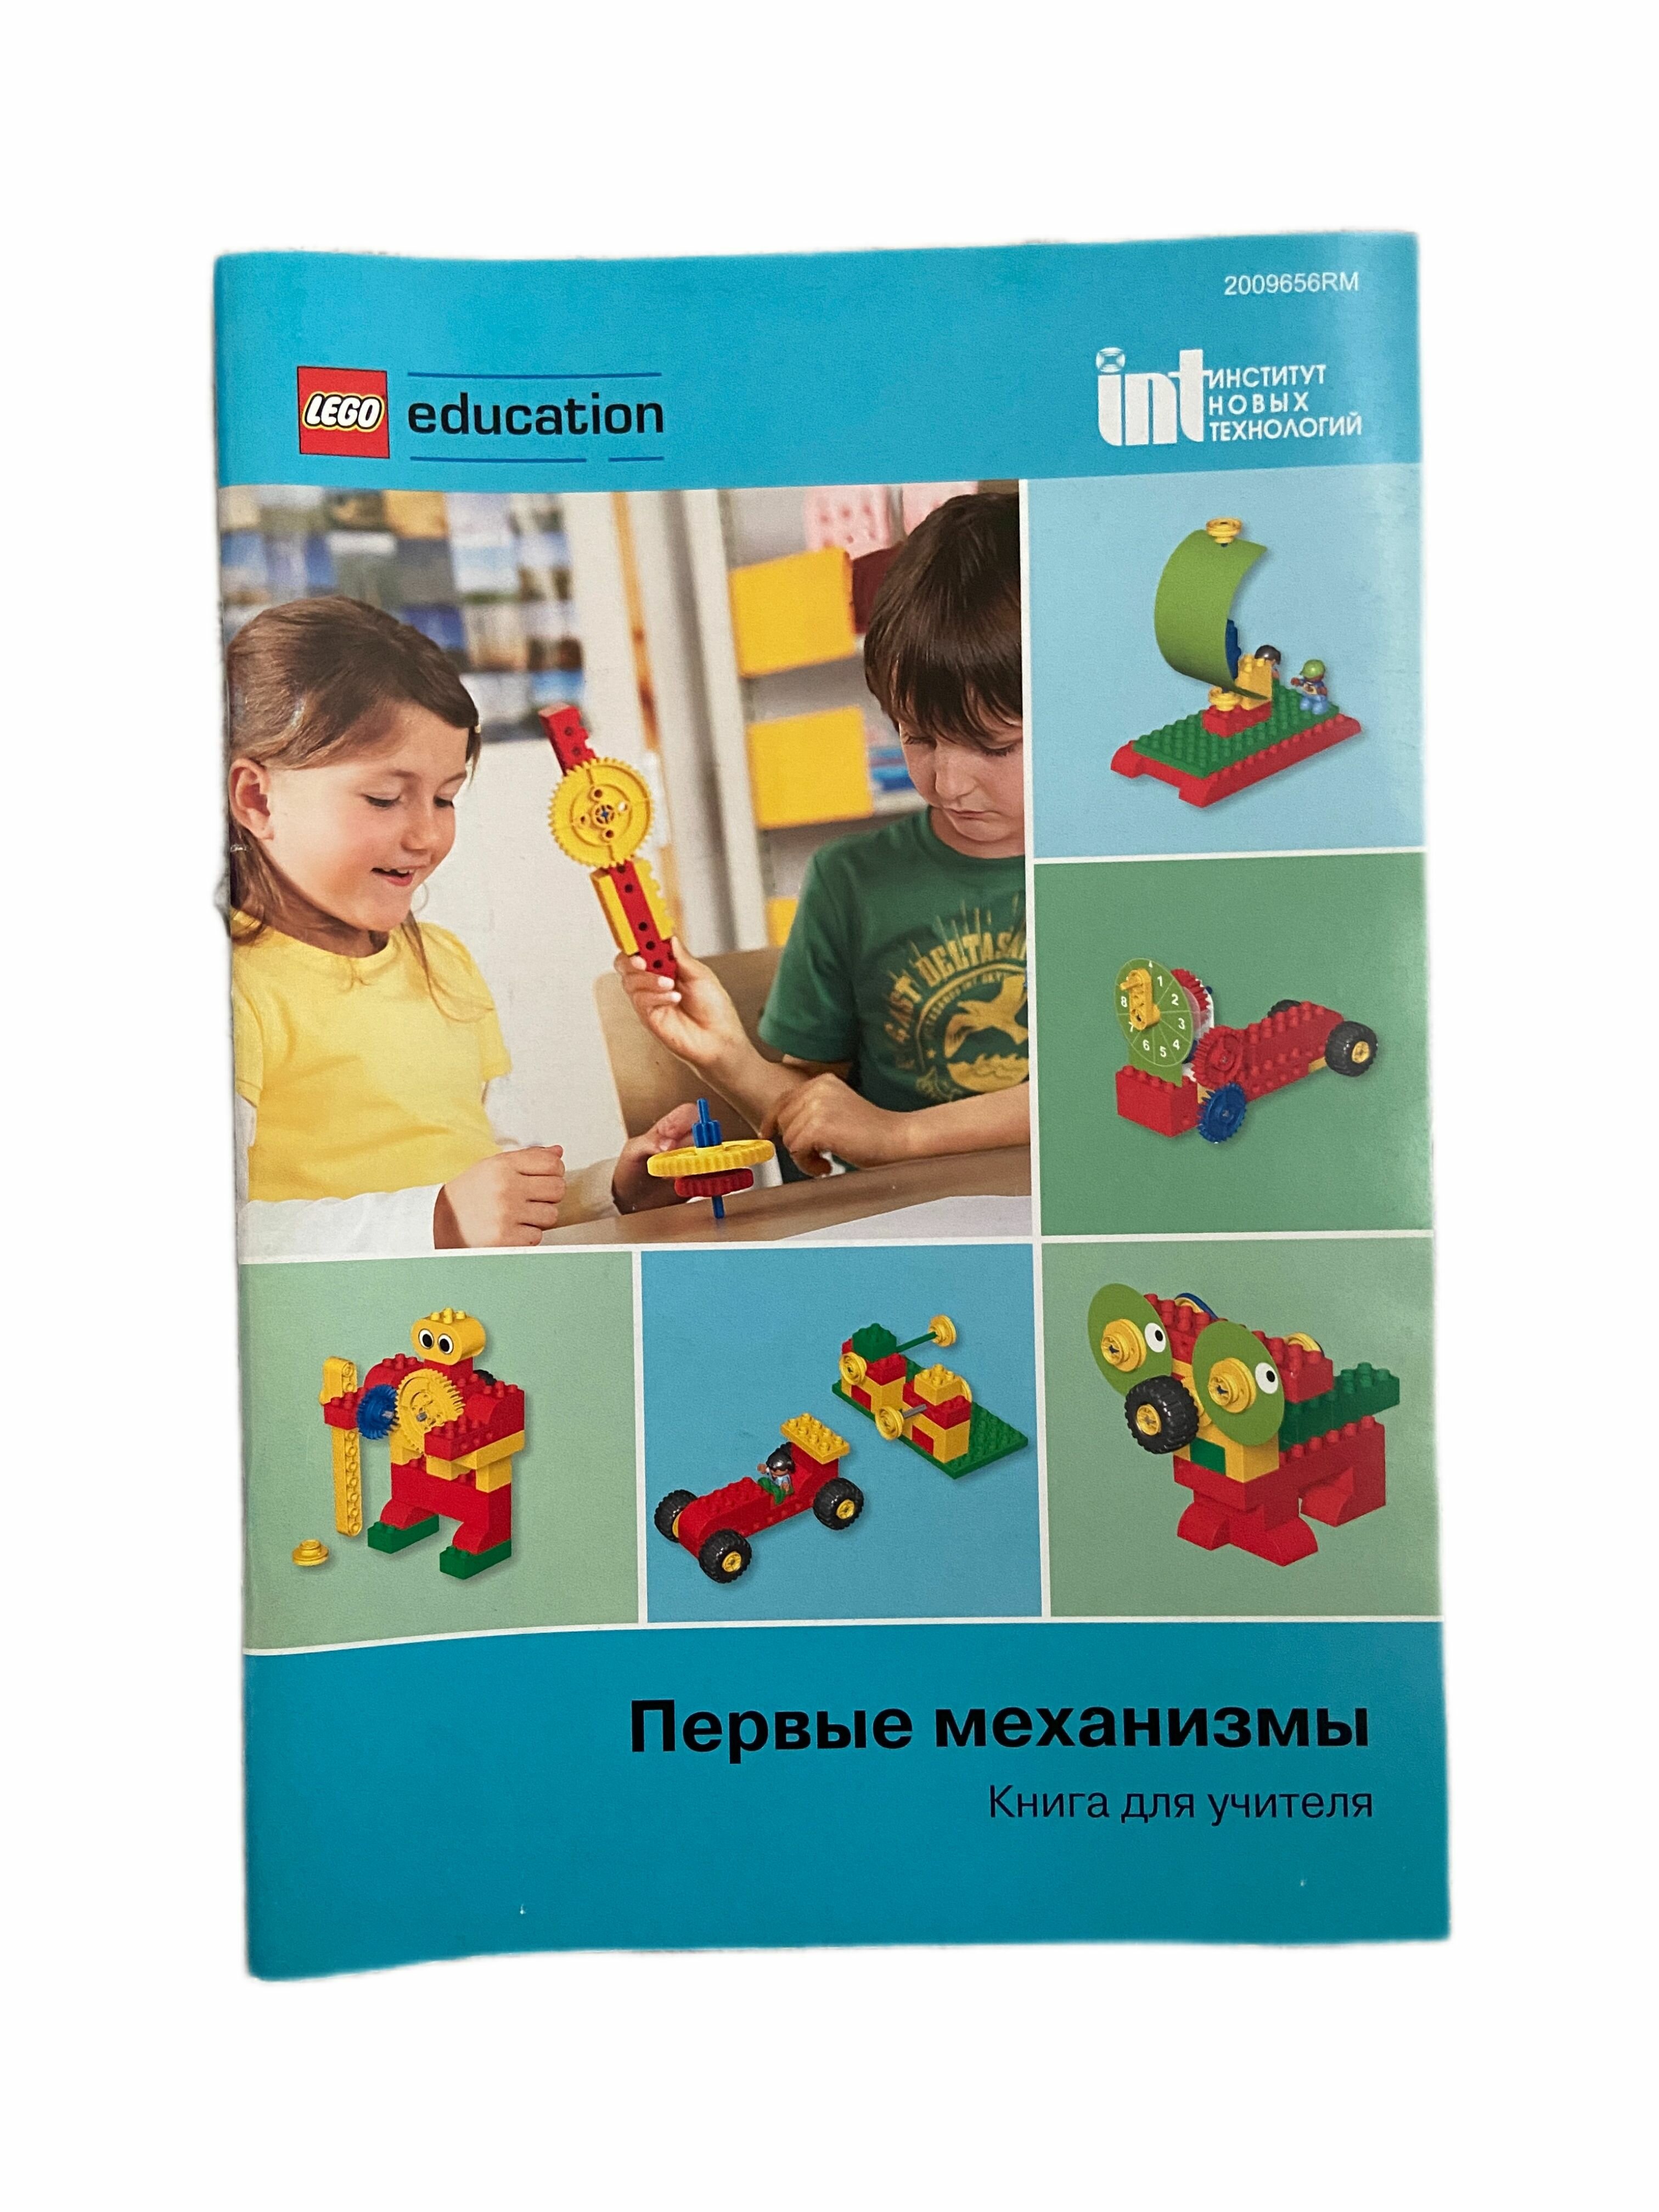 LEGO 2009656RM Конструктор "Первые механизмы" Книга для учителя